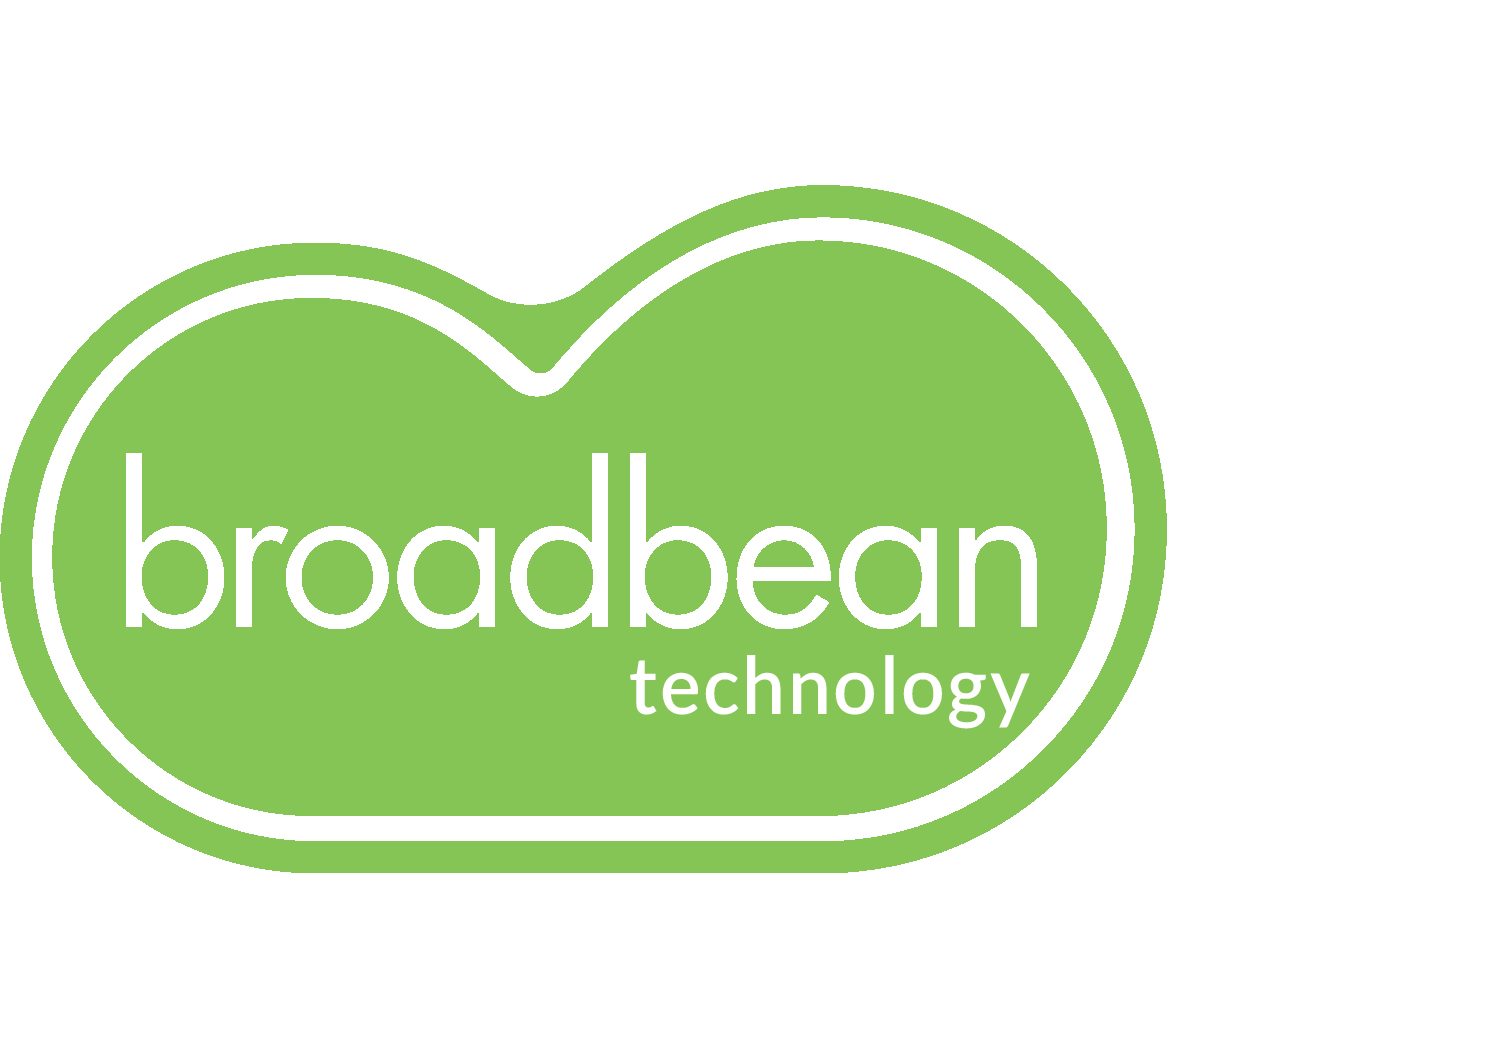 broadbean technology-withoutstrap-lime-rgb